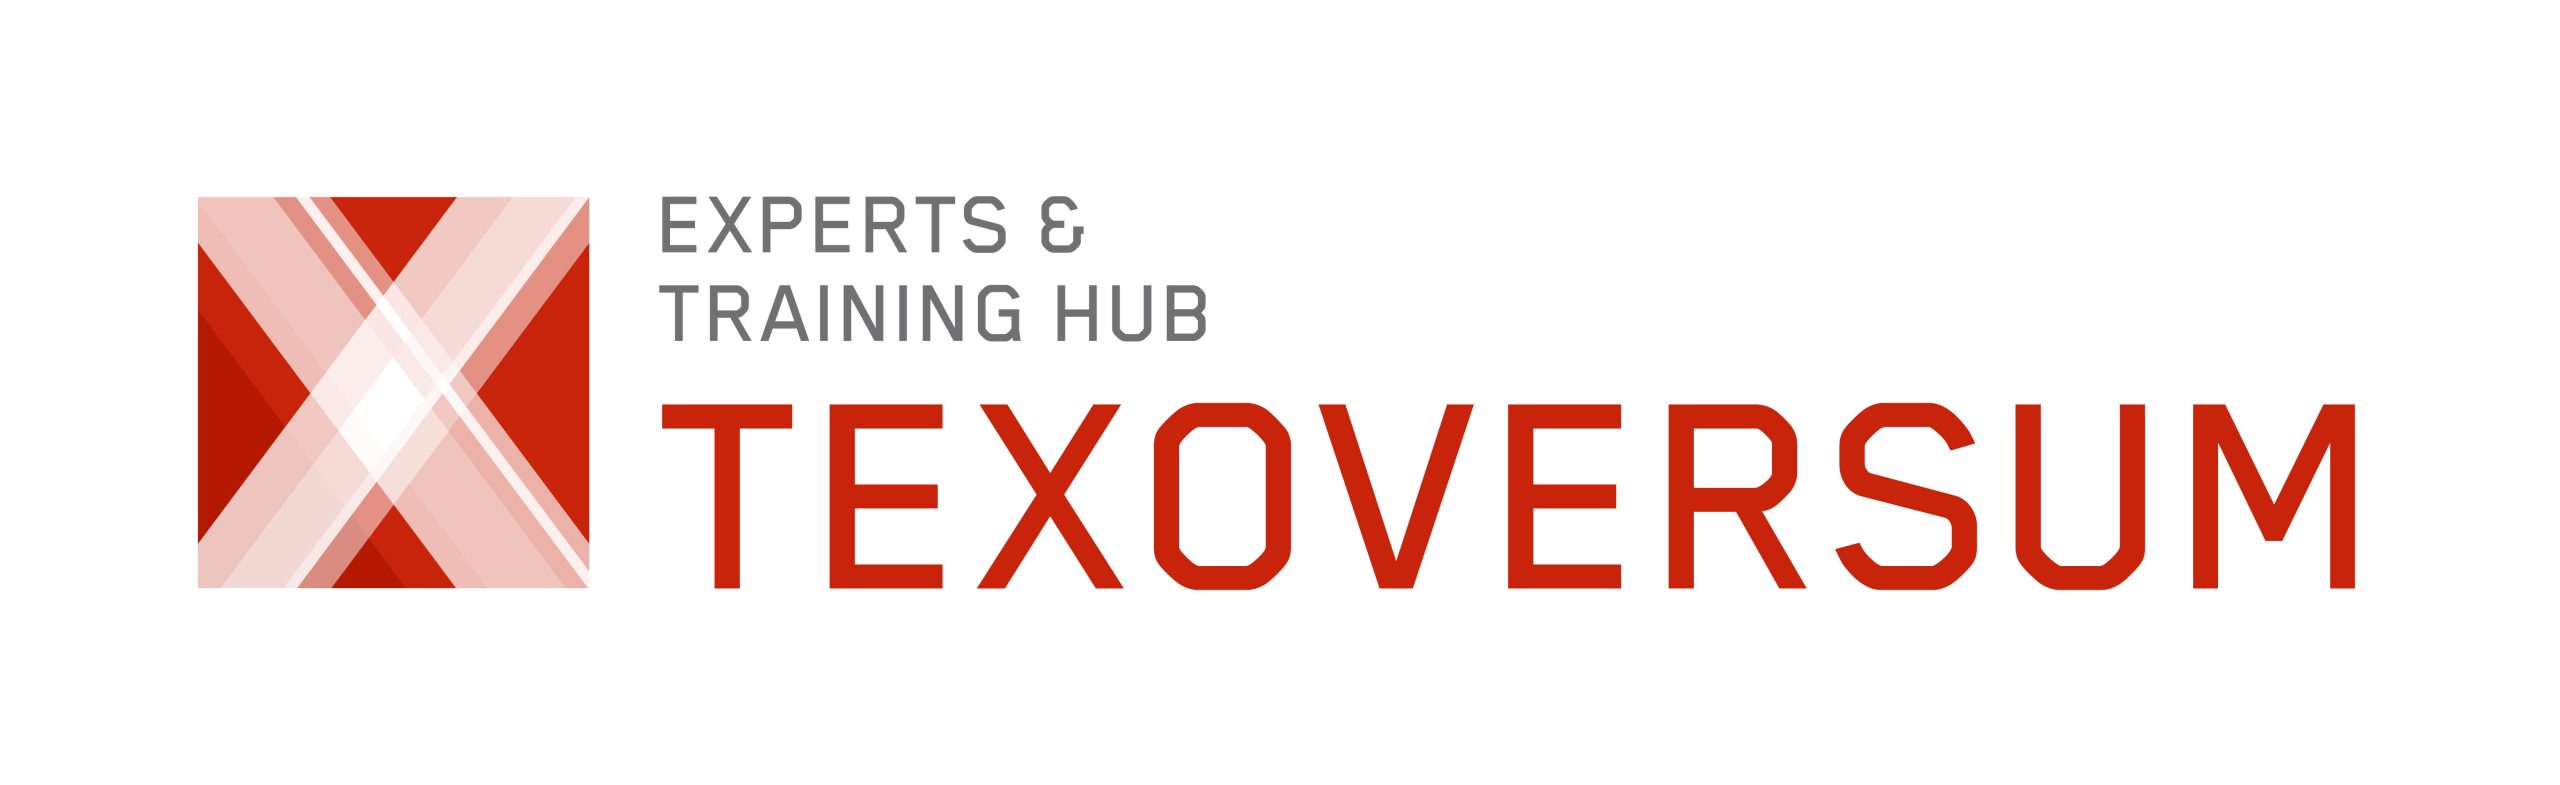 Texoversum_Experts-And_Training-Hub